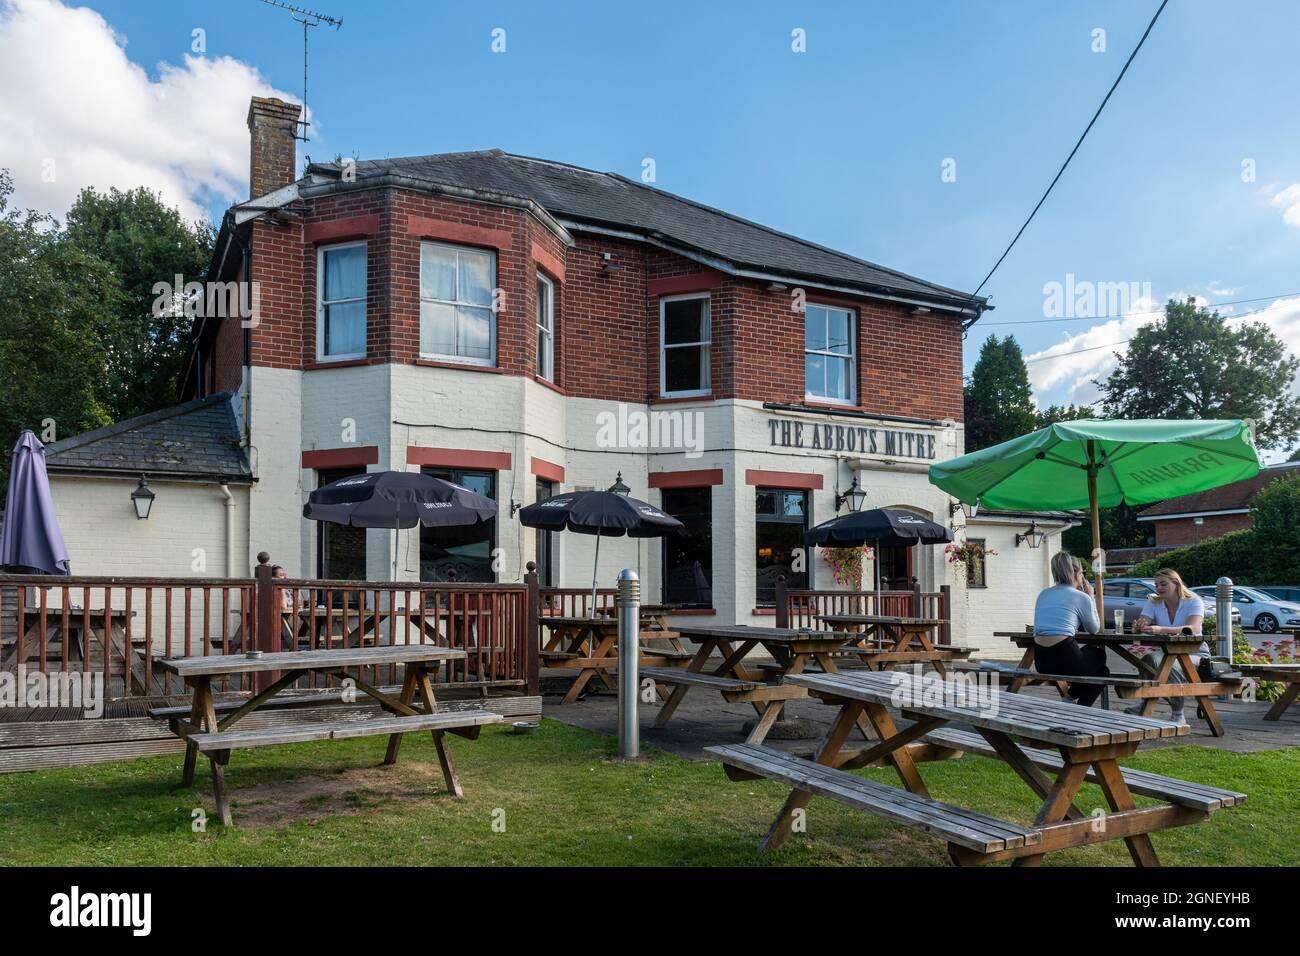 The Abbots Mitre pub in Chilbolton village, Hampshire, England, UK Stock Photo